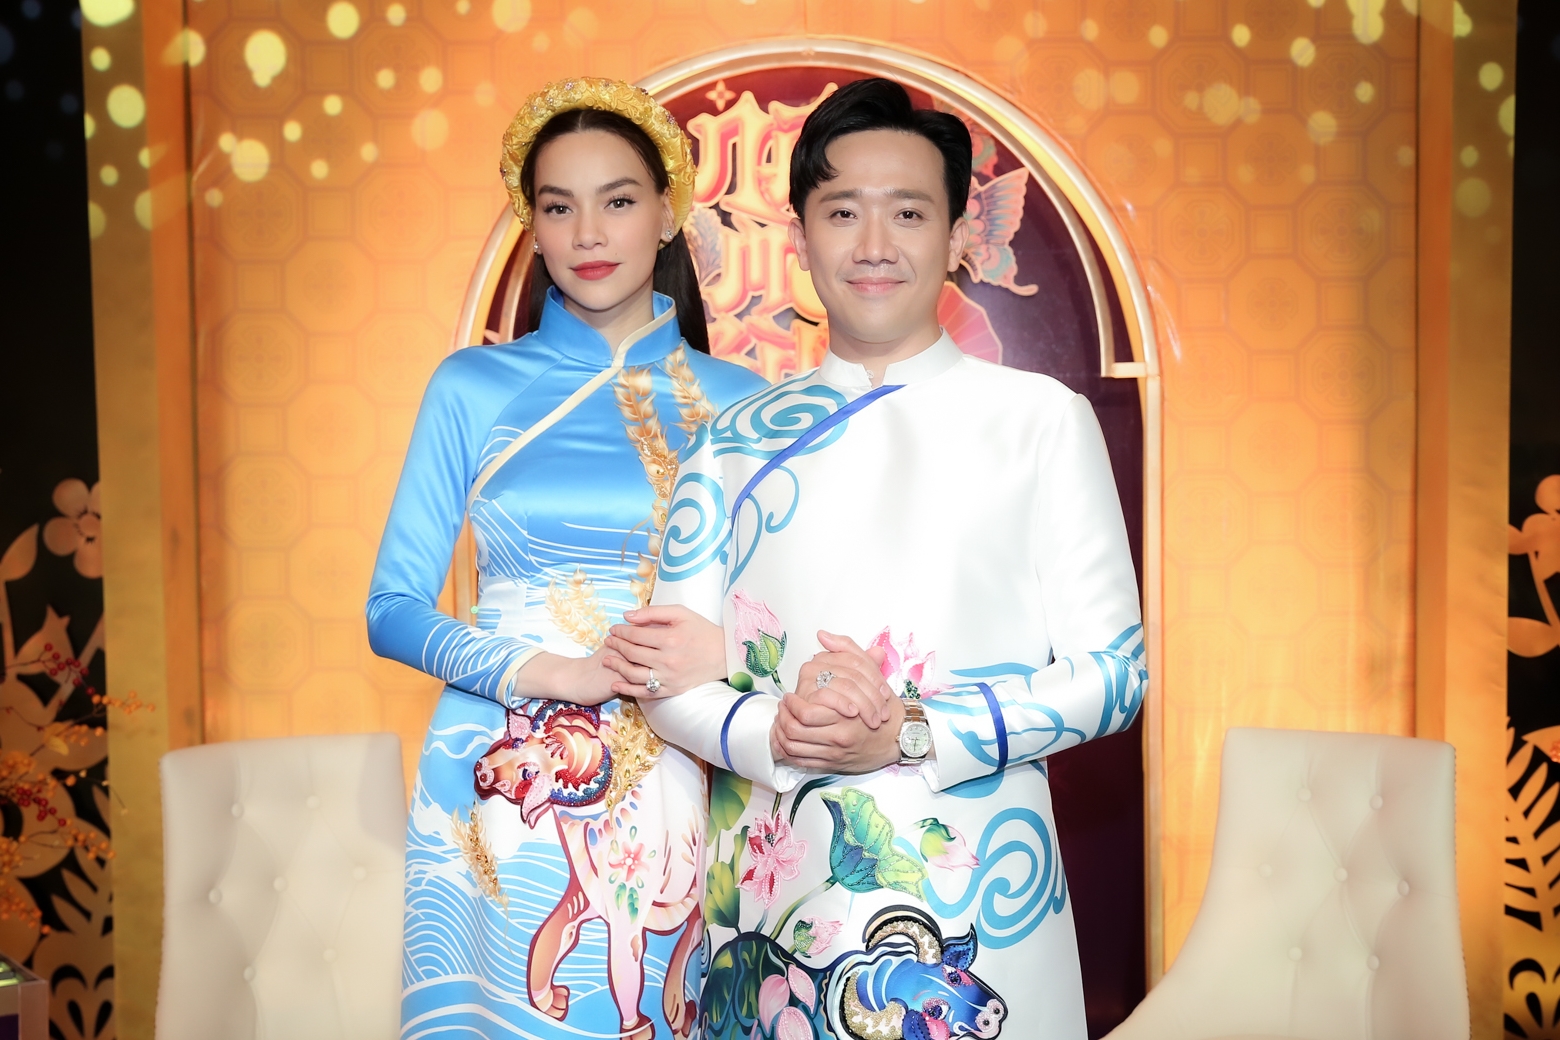 Gala nhạc Việt nhận kỷ lục về chương trình Tết - Ảnh 1.